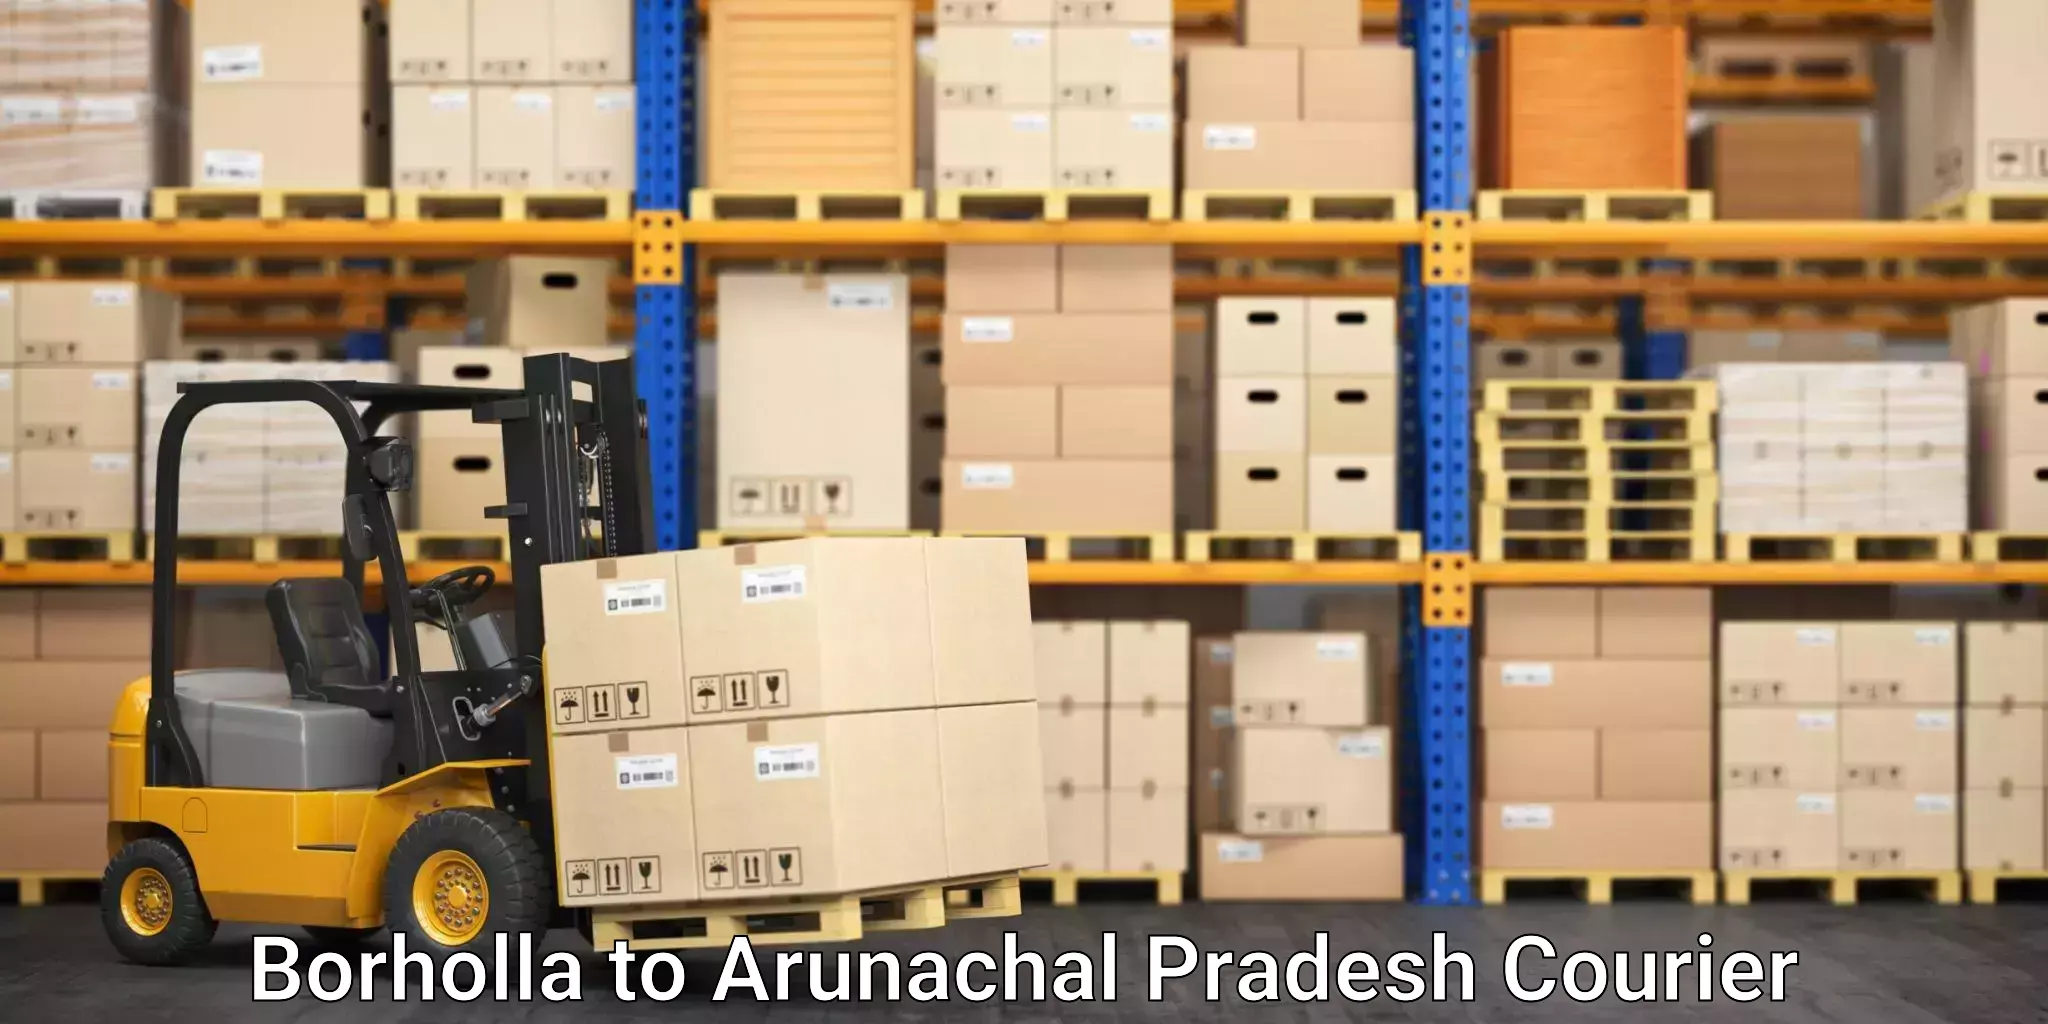 Punctual parcel services Borholla to Arunachal Pradesh